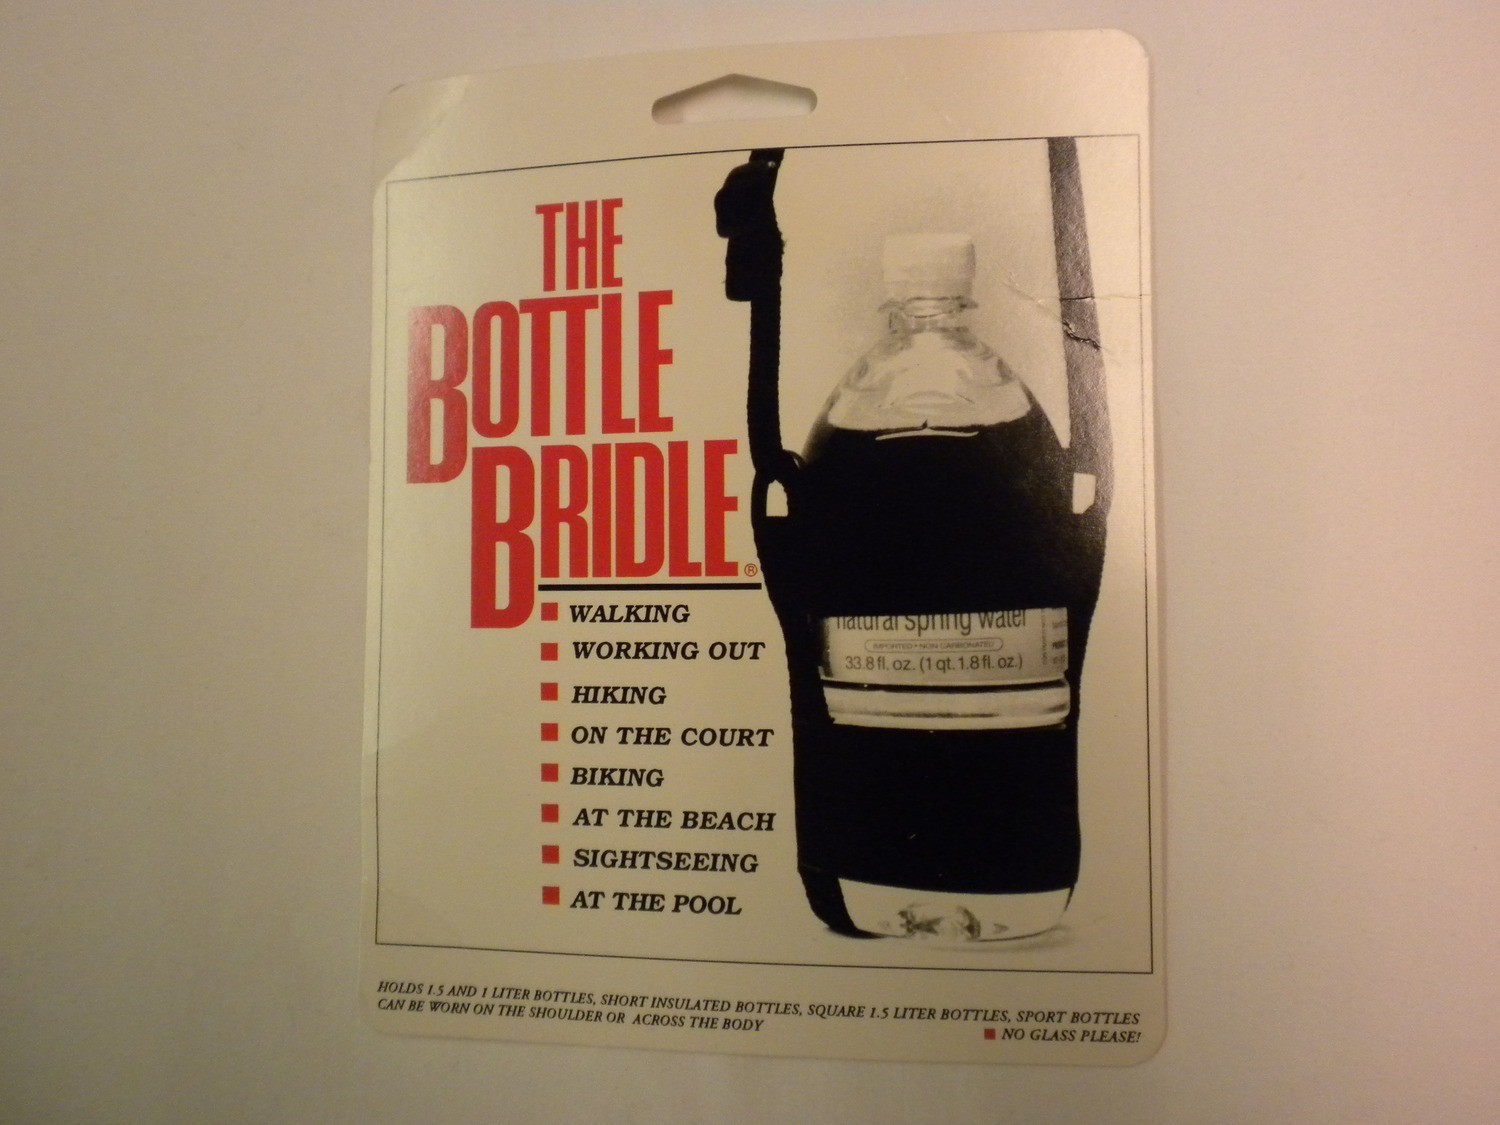 Bottle Bridle